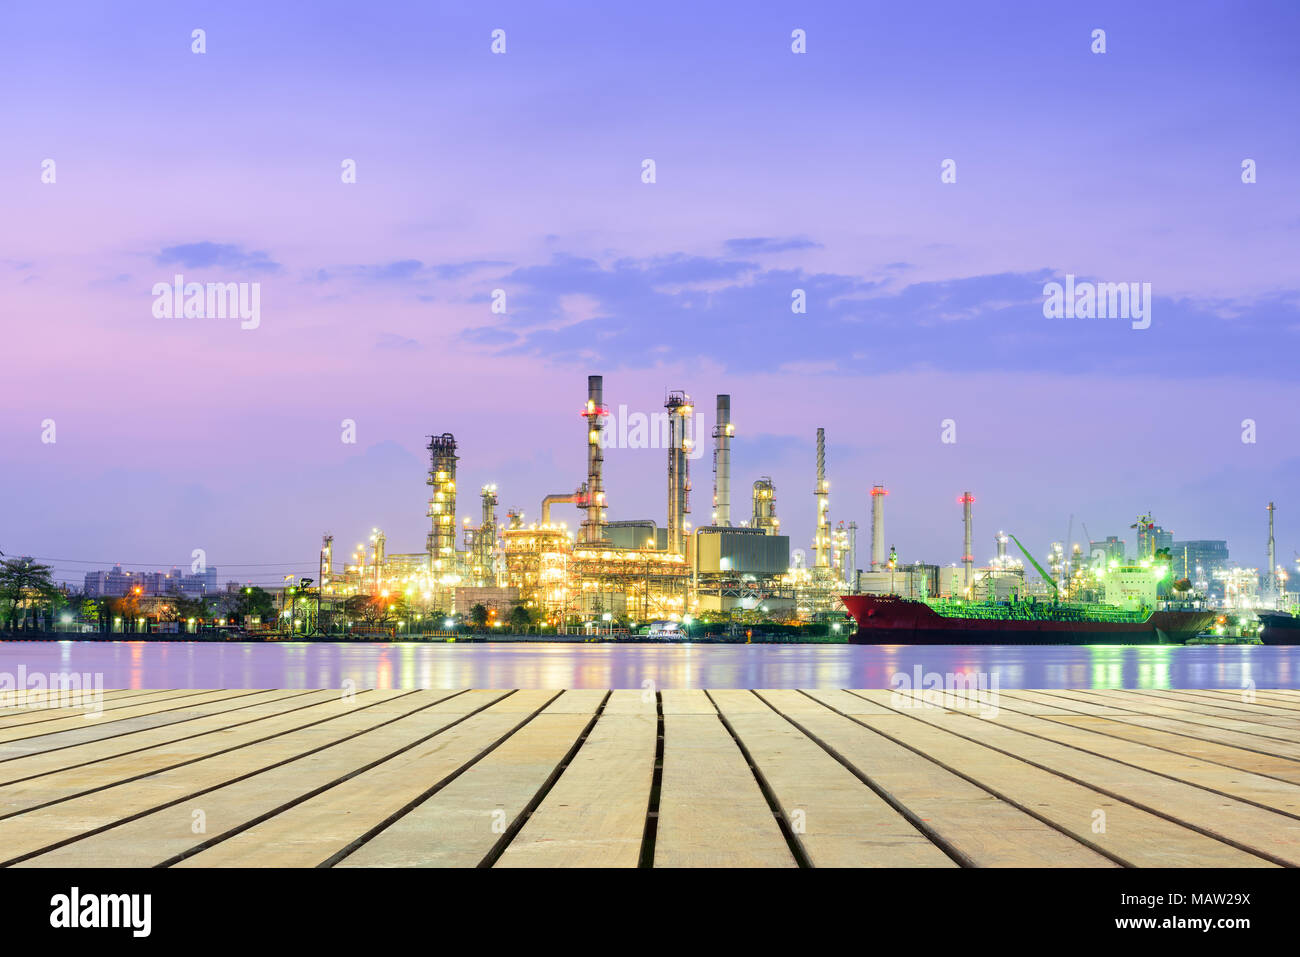 Eine Ölraffinerie Pflanze bei Sonnenaufgang Szene. Stockfoto